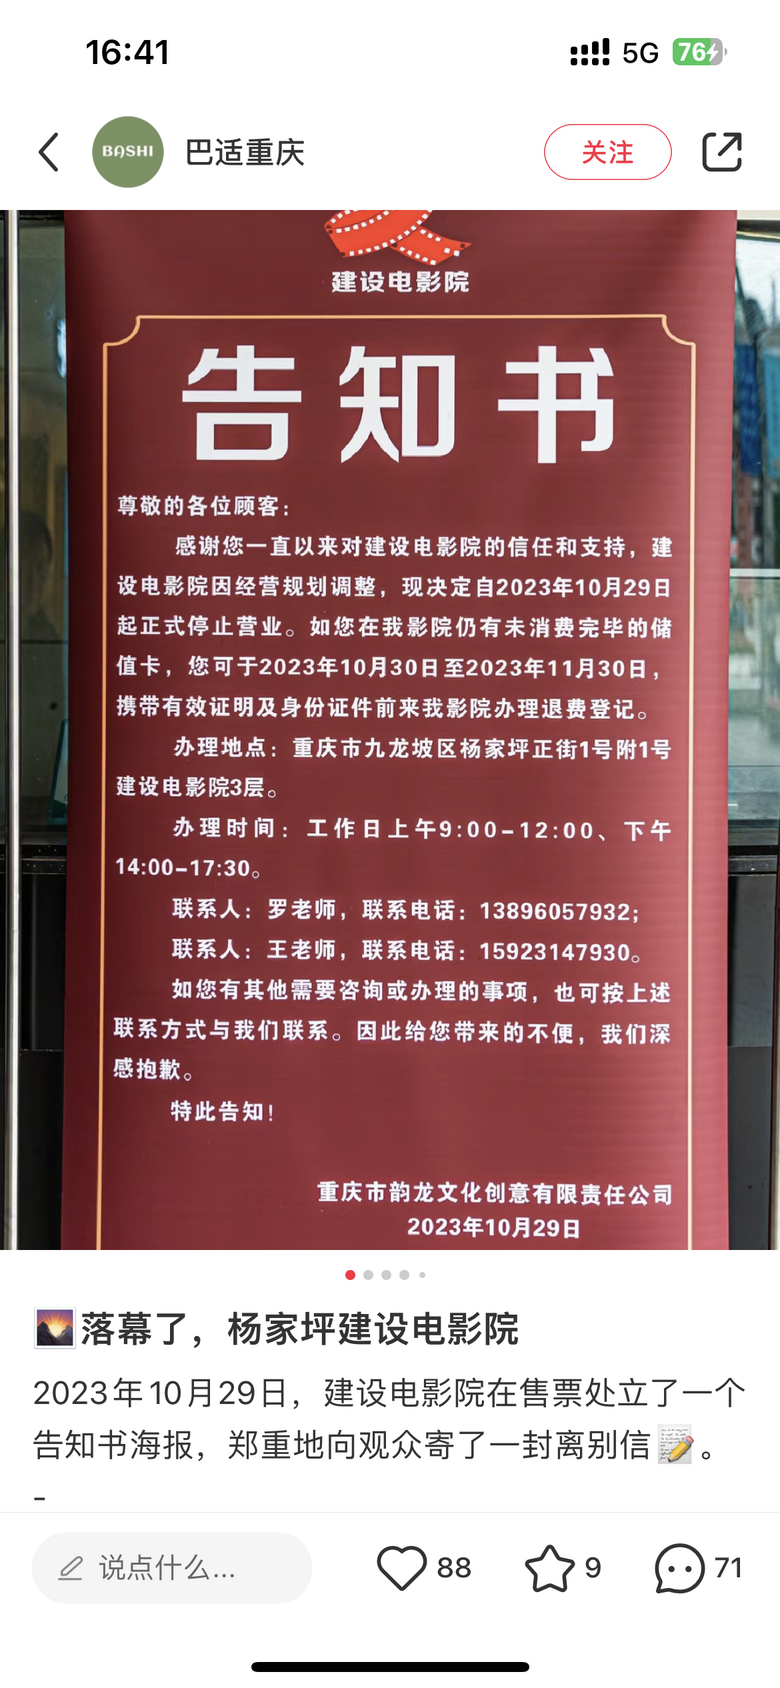 杨家坪建设电影院也关门了！说说你们对九龙坡、杨家坪的记忆